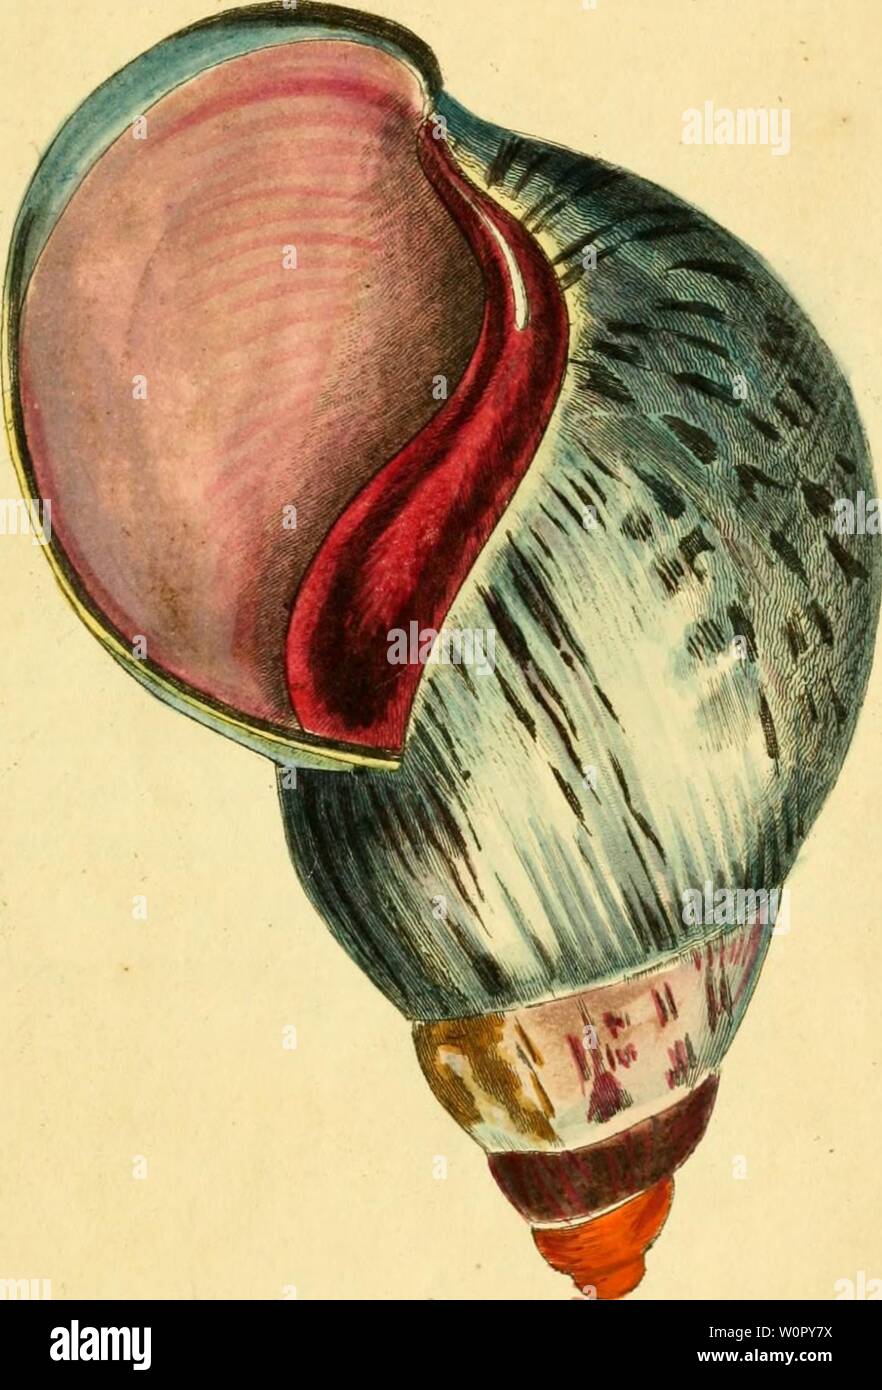 Immagine di archivio da pagina 170 di [descrizioni e illustrazioni di molluschi. [Descrizioni e illustrazioni di molluschi : estratte da del naturalista descriptionsillu miscellanea12shaw Anno: 1800 .â ''?.V â/0., O/U X/.fl-fSoo /â â -J-H&lt;Jrr A.m&LT;.n Jfr,,, Foto Stock